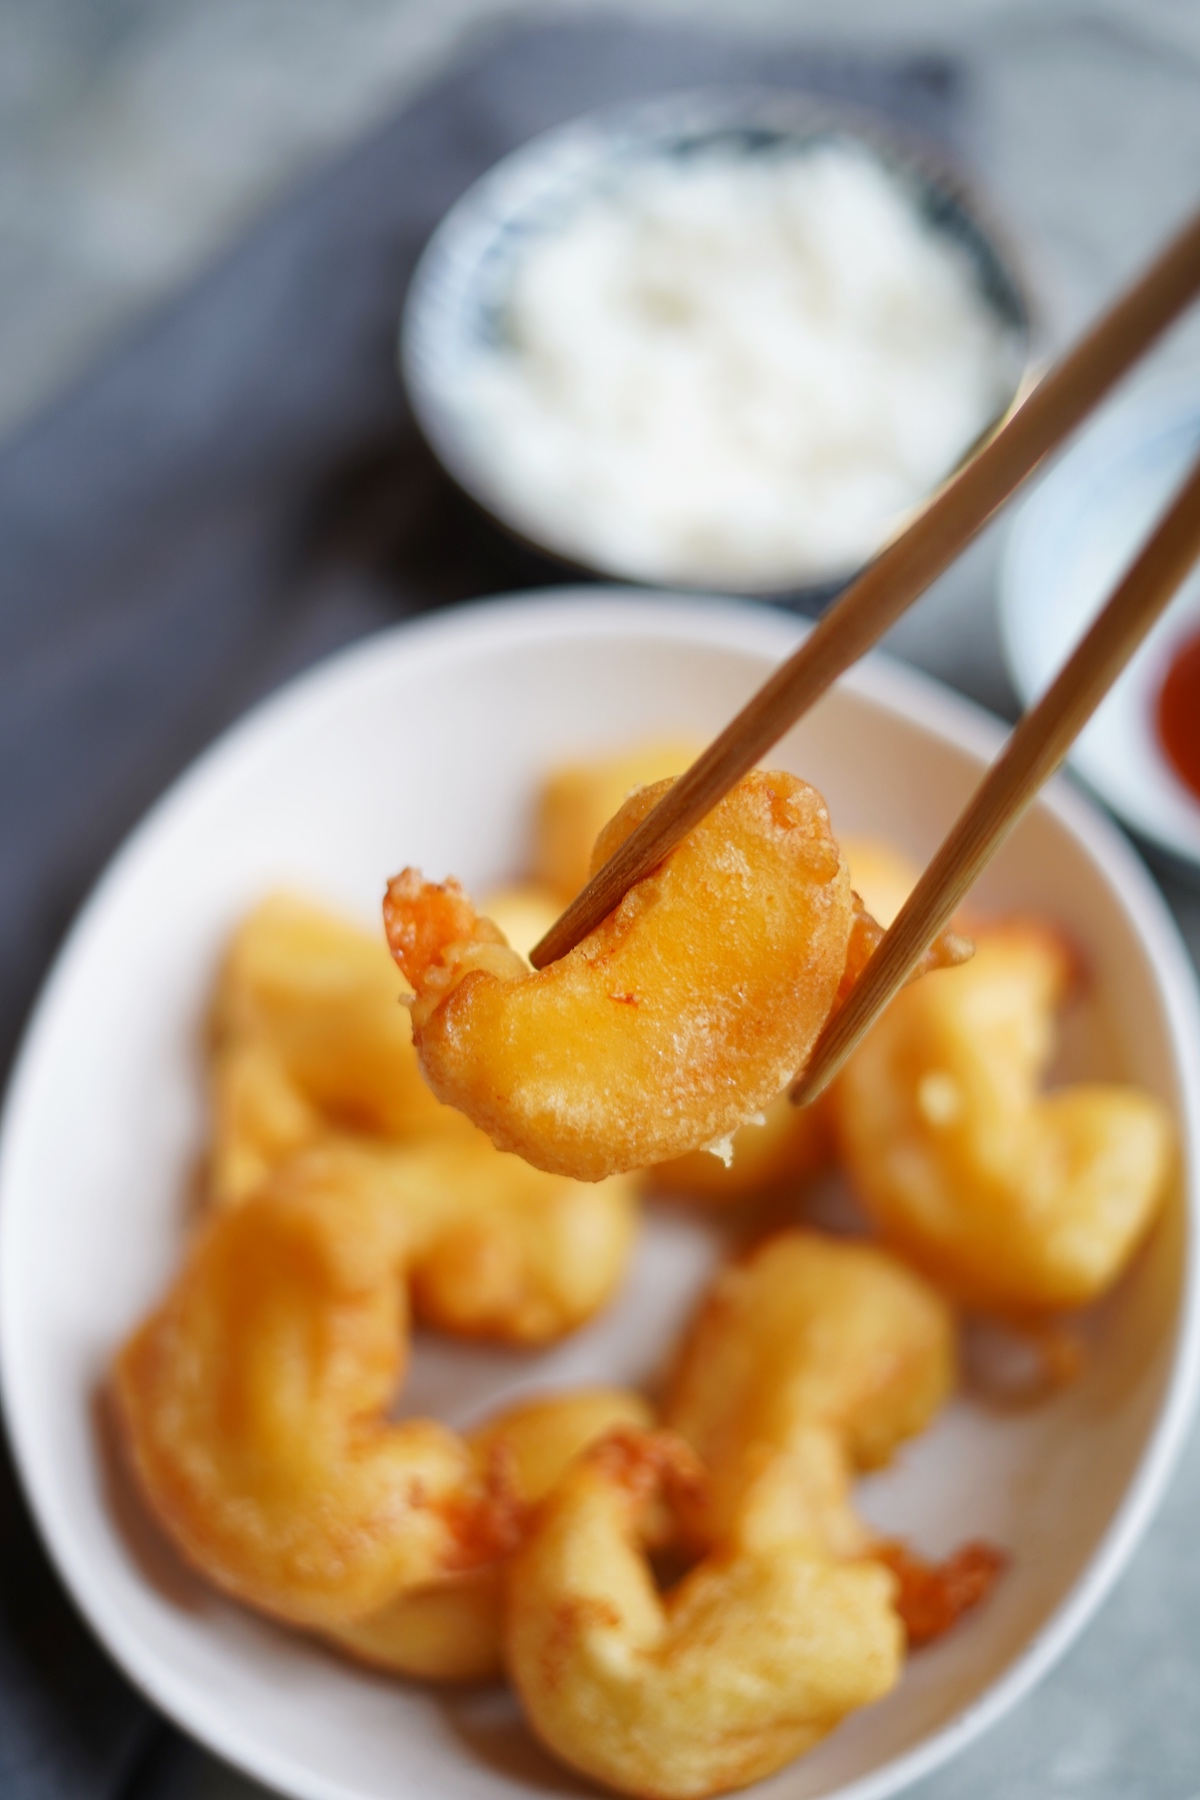 Chopsticks holding a fried shrimp to show the crispy batter.